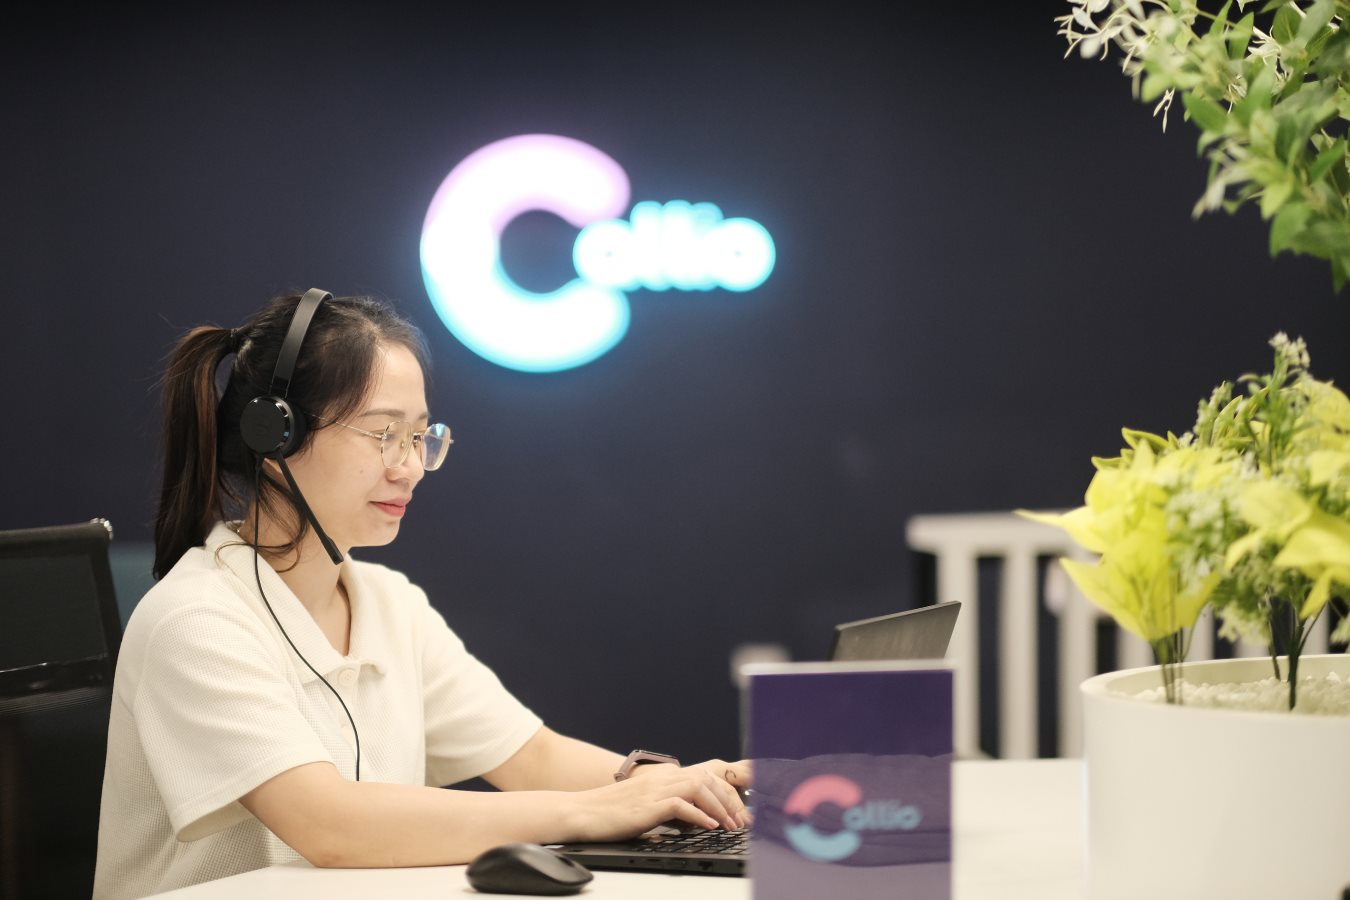 Giang Thiên Phú - “Developer có tâm” đứng sau Callio: Phần mềm doanh thu vài triệu USD mà không ai dùng là thất bại - Ảnh 9.